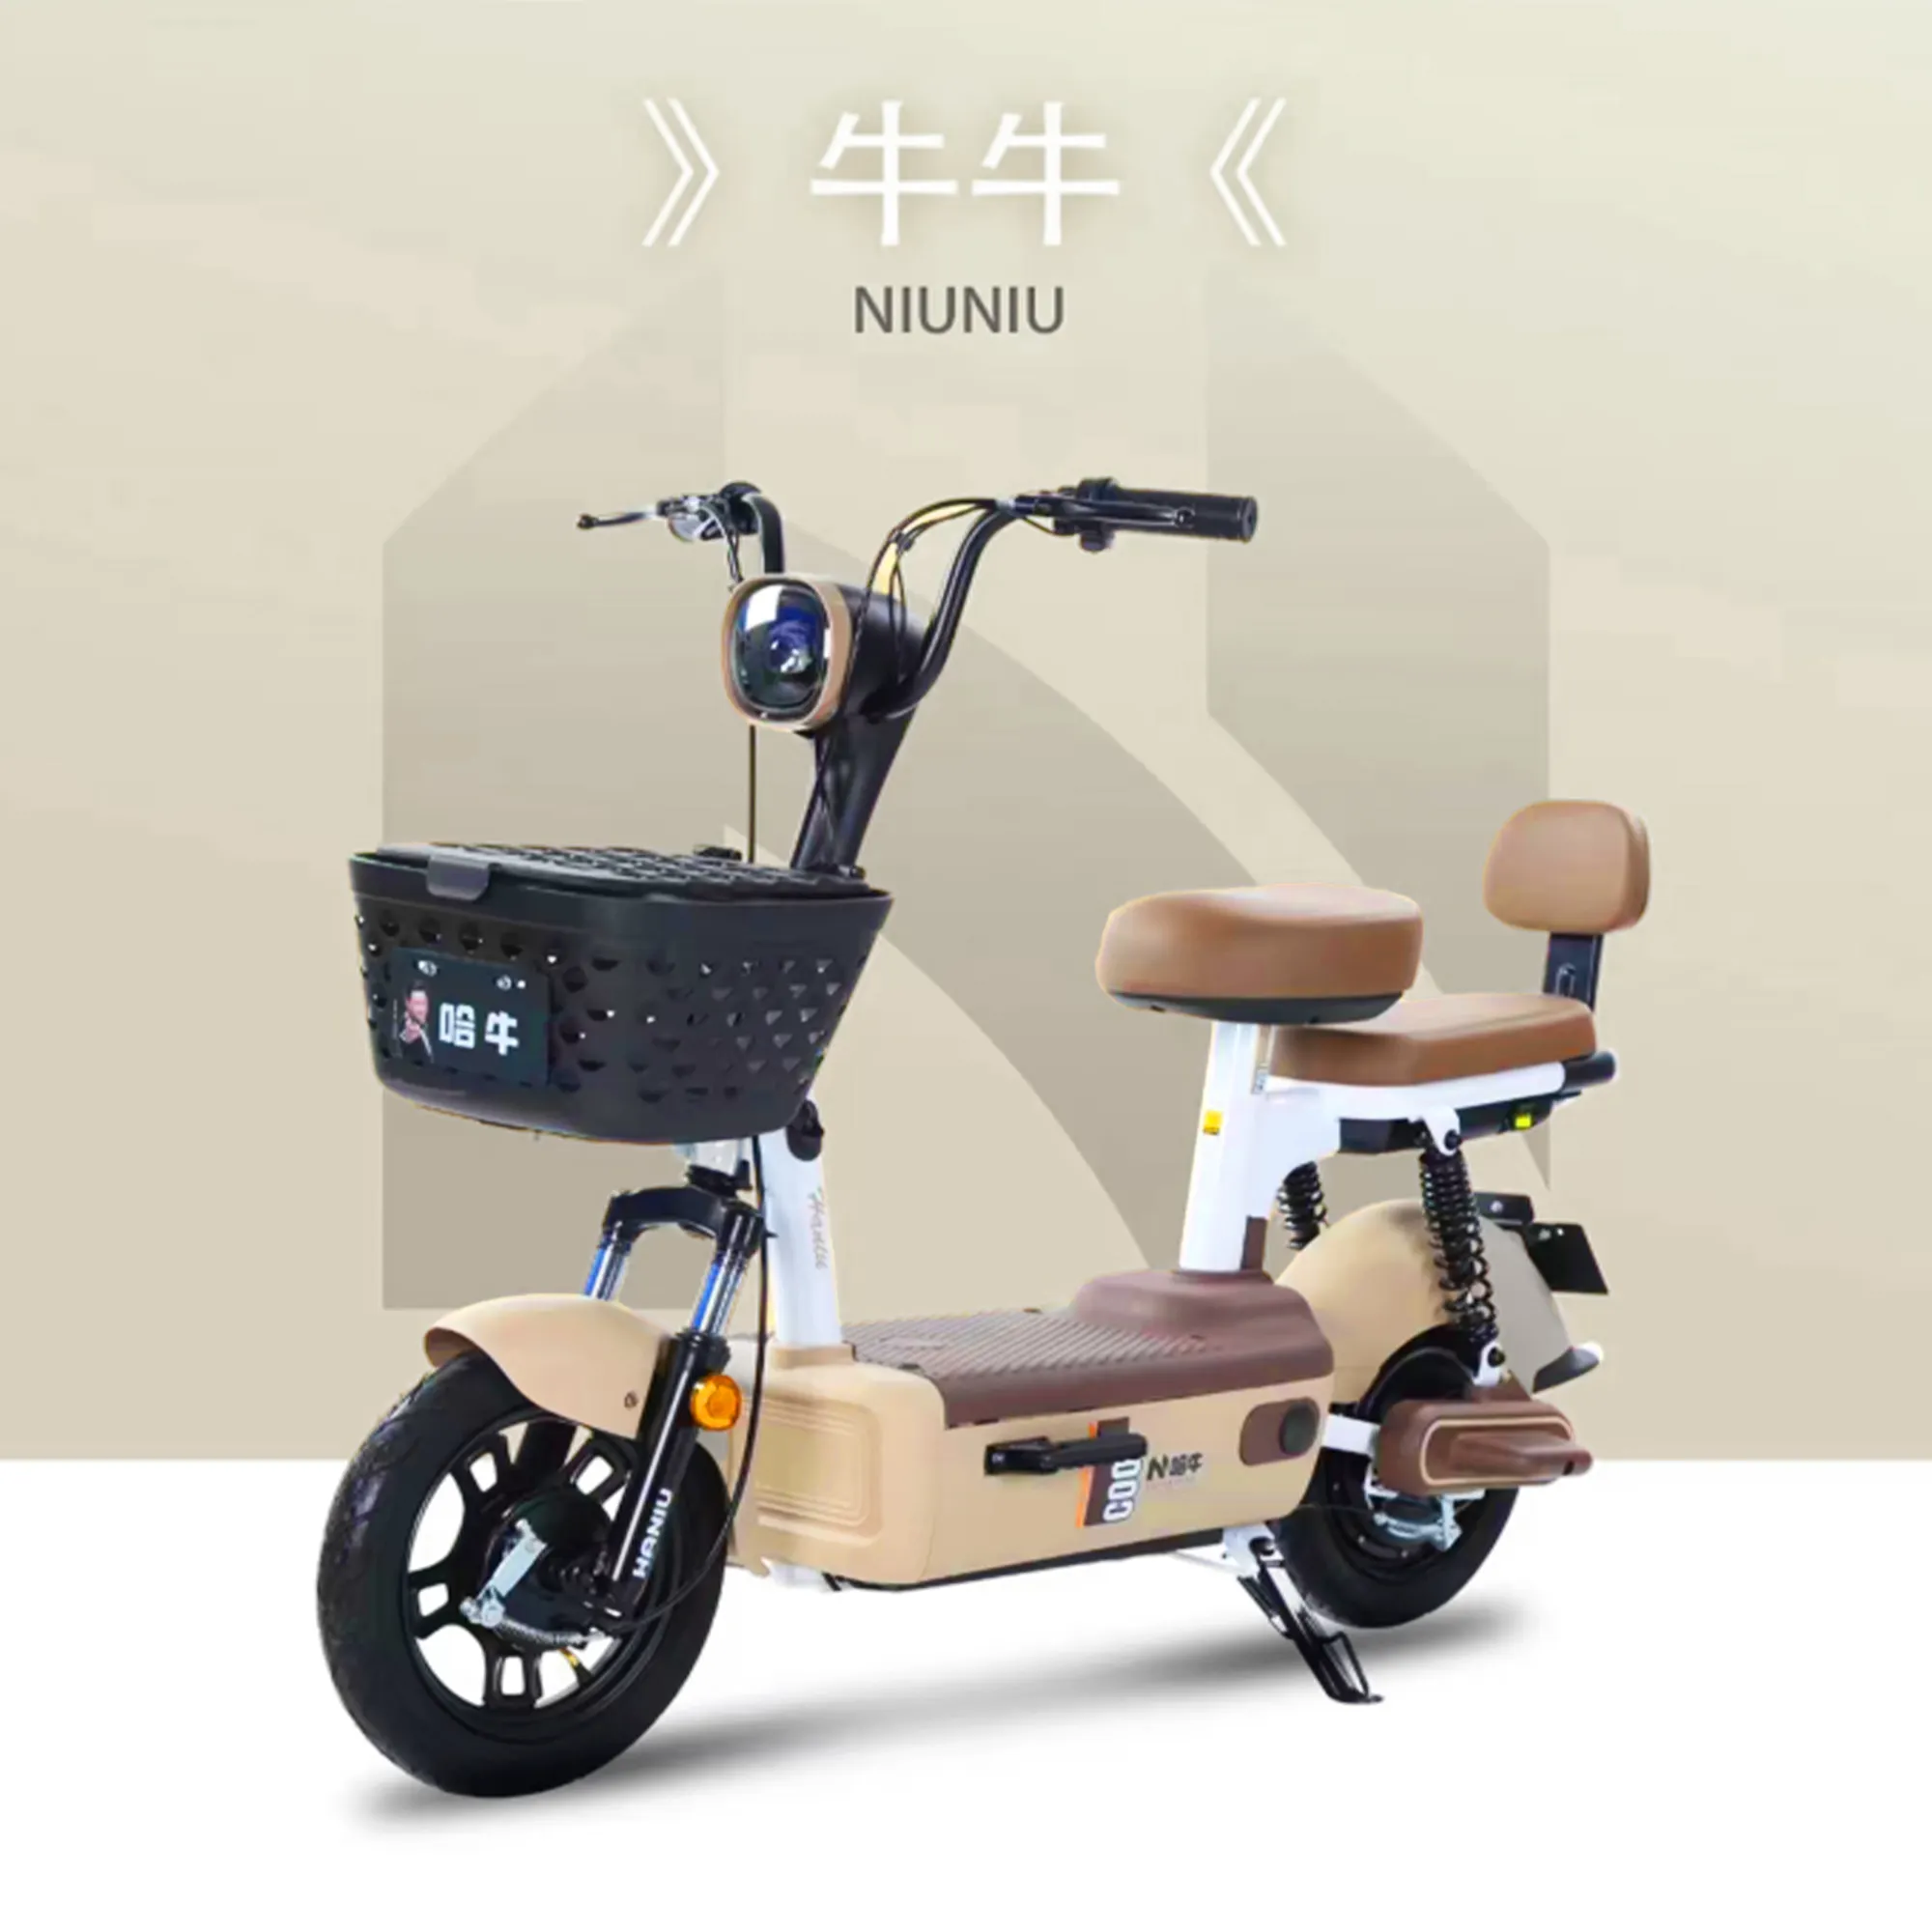 دراجة كهربائية بعجلتين من الجهة المصنعة في الصين دراجات كهربائية بمقعدين جهاز تعقب سكوتر دراجة كهربائية